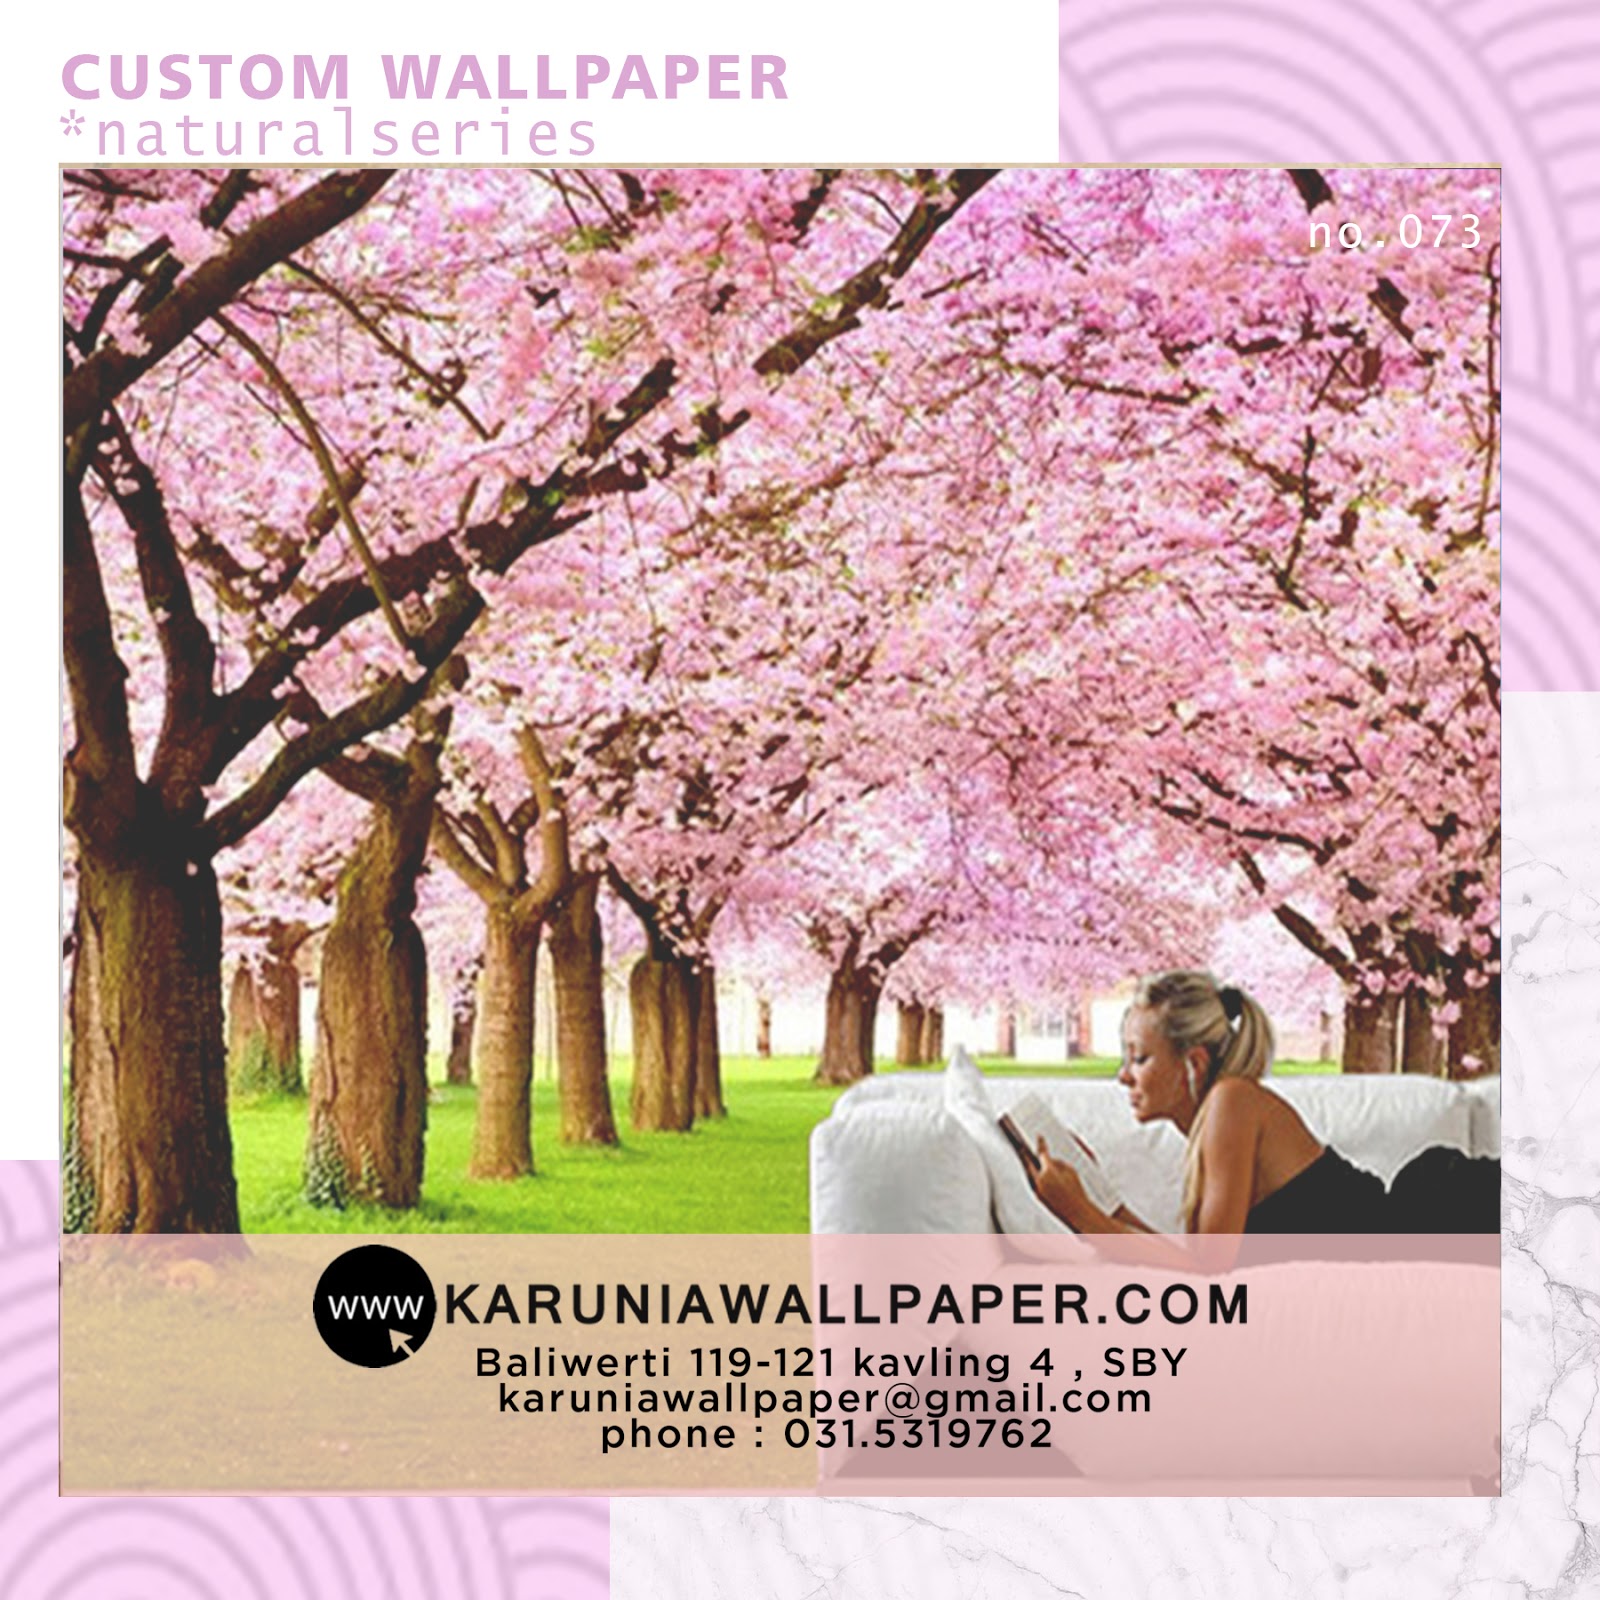 jual wallpaper custom karuniawallpaper